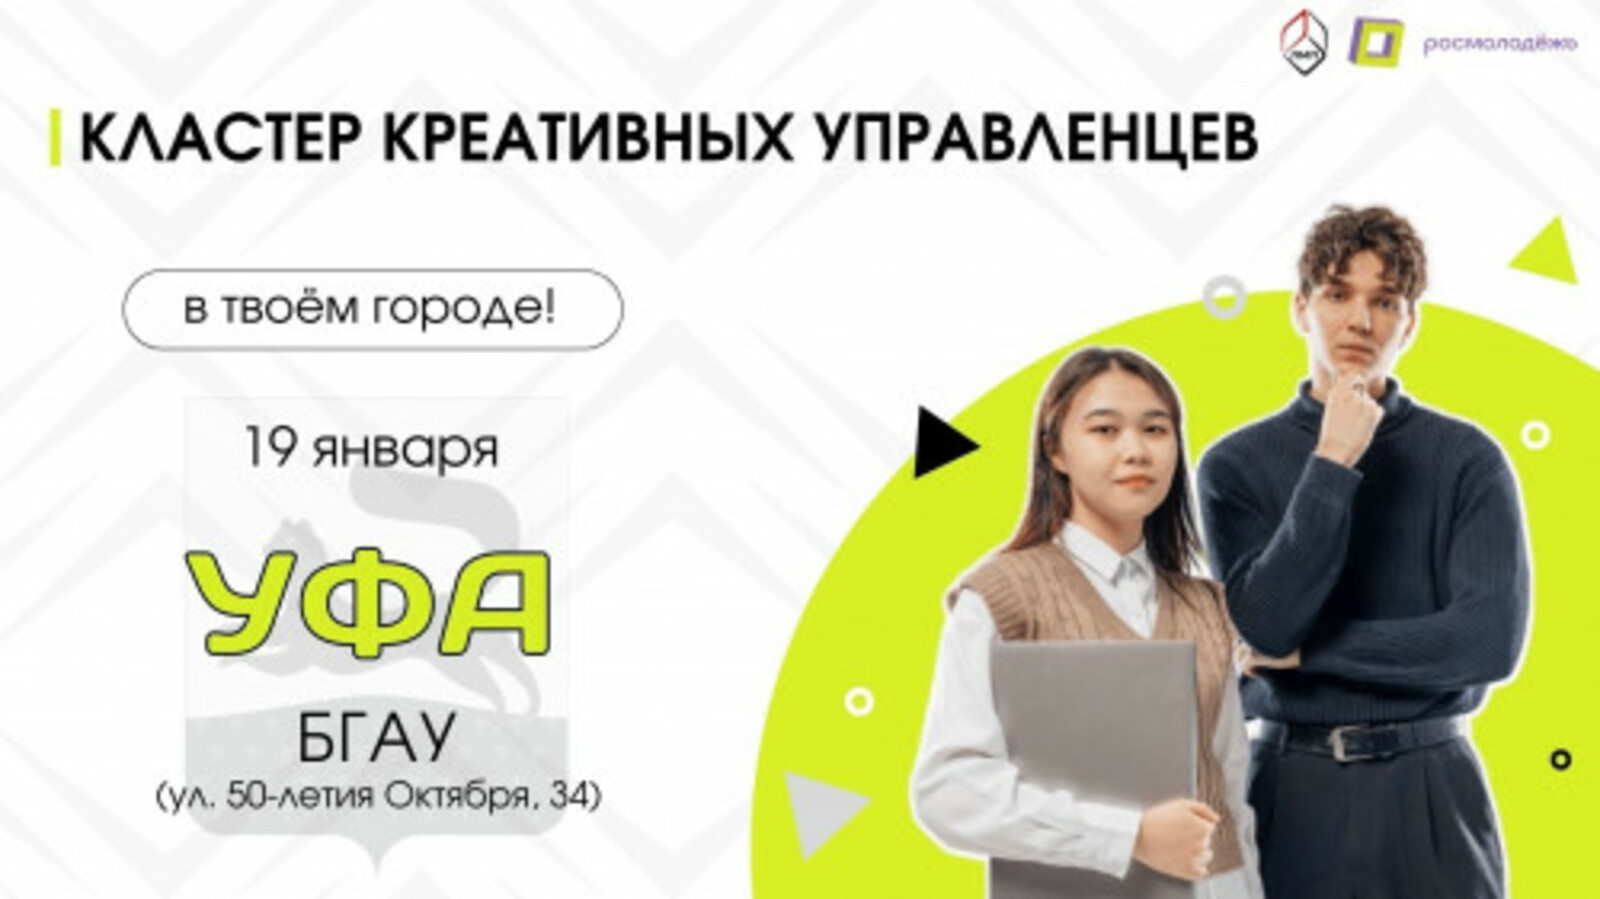 Молодых менеджеров и предпринимателей Башкортостана обучают в «Кластере креативных управленцев»